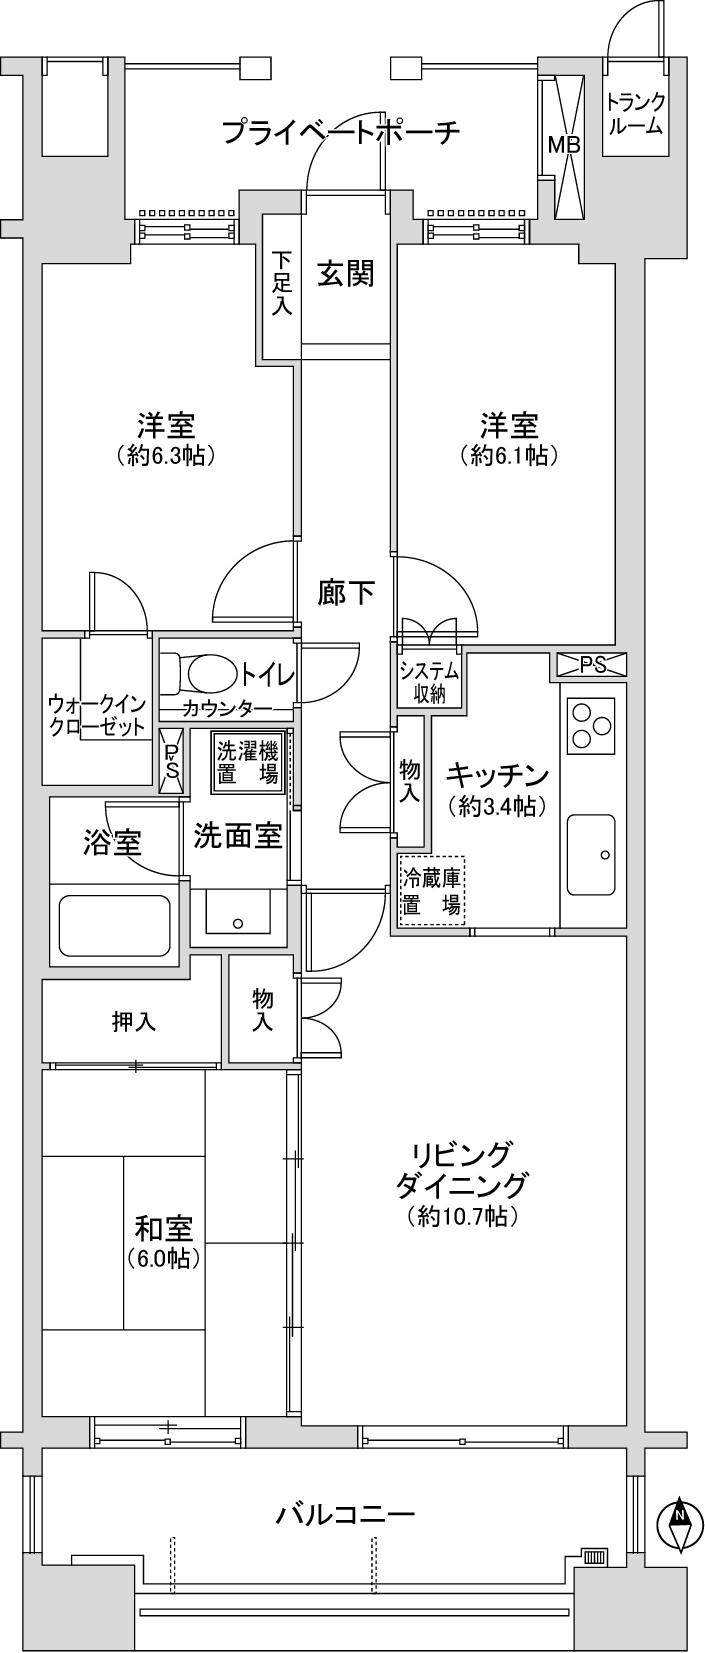 Floor plan. 3LDK, Price 33,500,000 yen, Occupied area 72.46 sq m , Balcony area 12 sq m   [Floor plan] ... All rooms have lighting equipment!